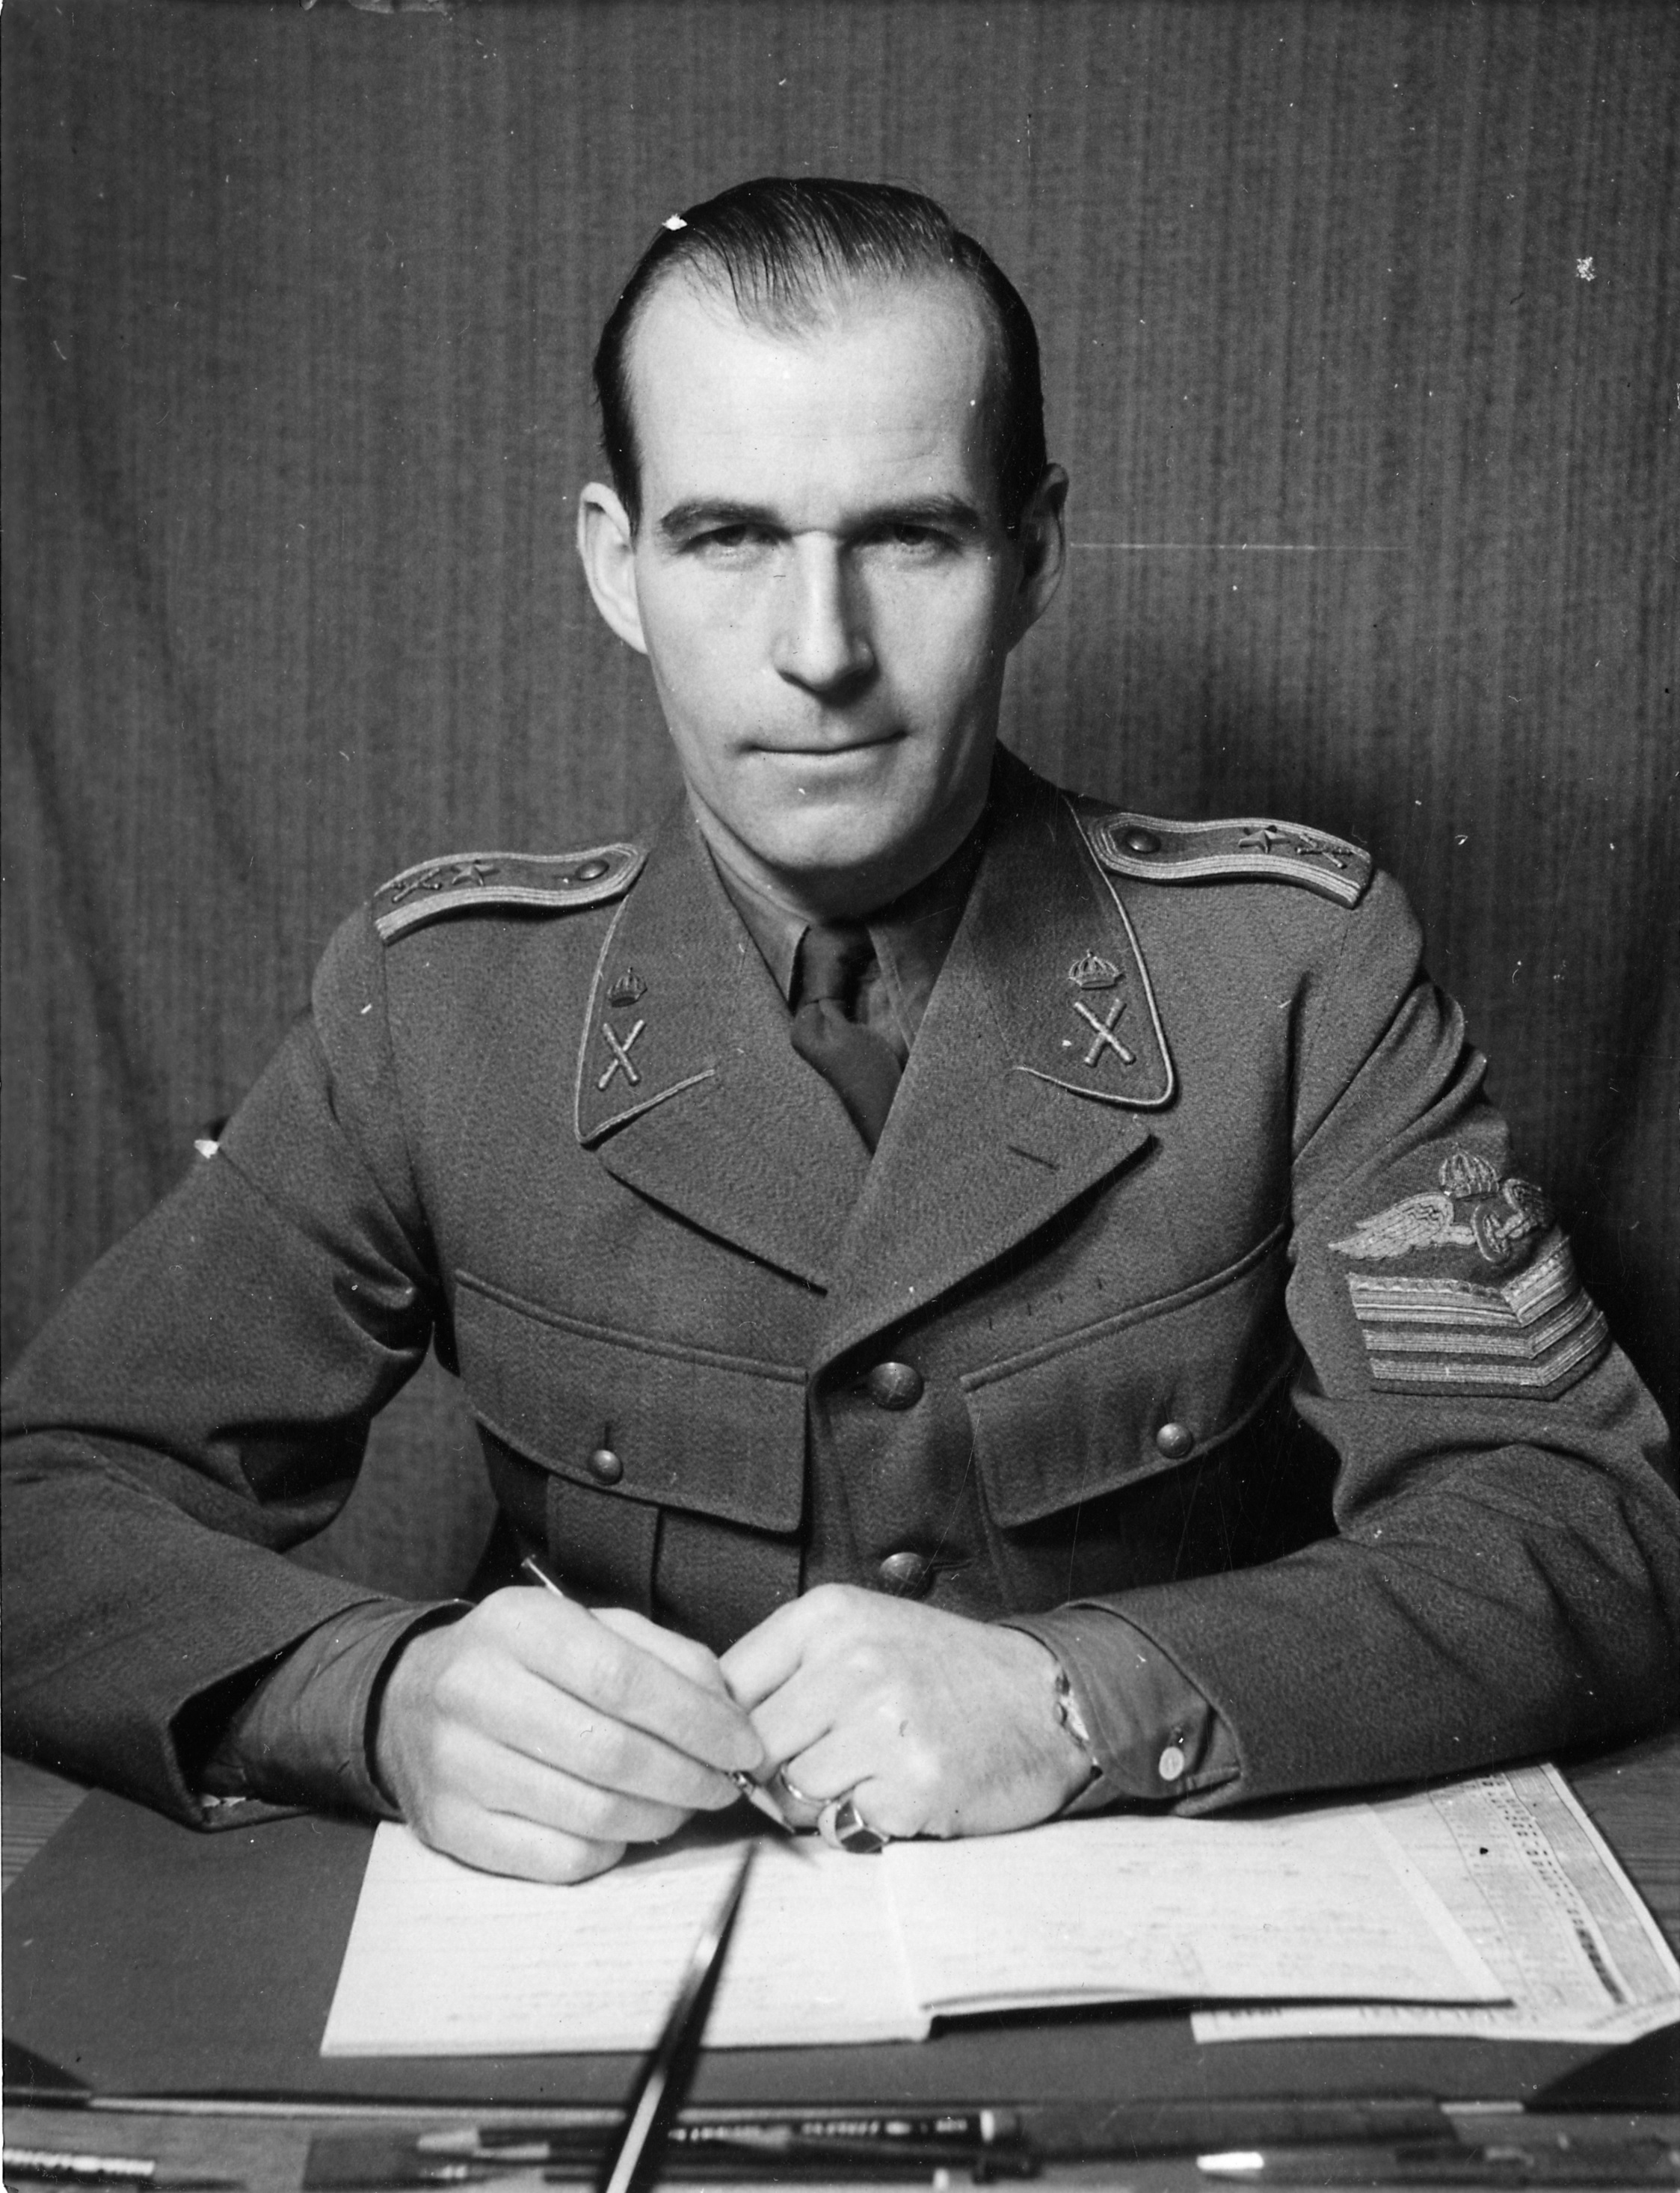 Major von Horn in 1943